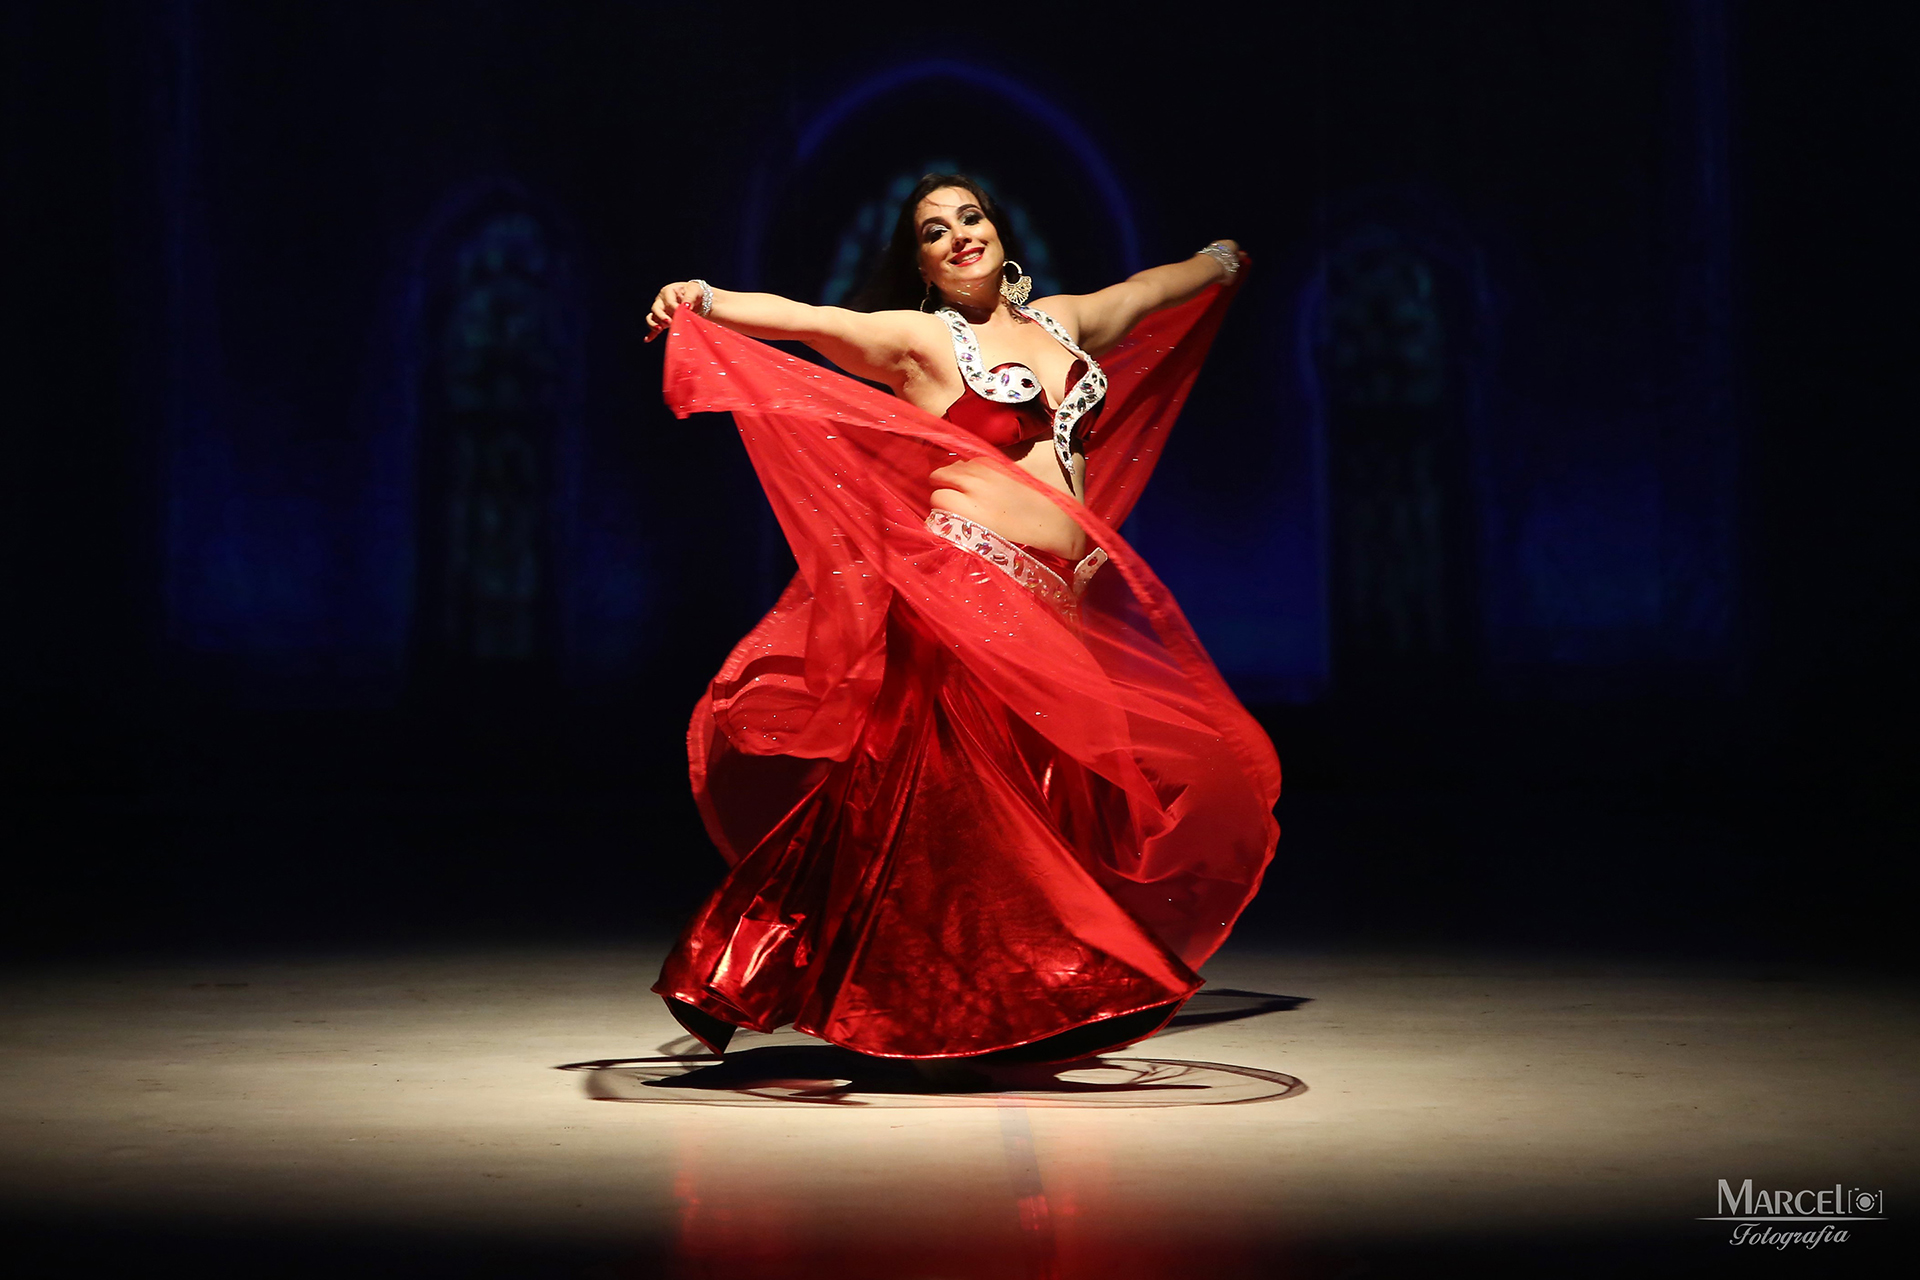 Carol Jianjulio Dança - São 25 anos de dedicação e amor a dança, cultura e bailarinas.